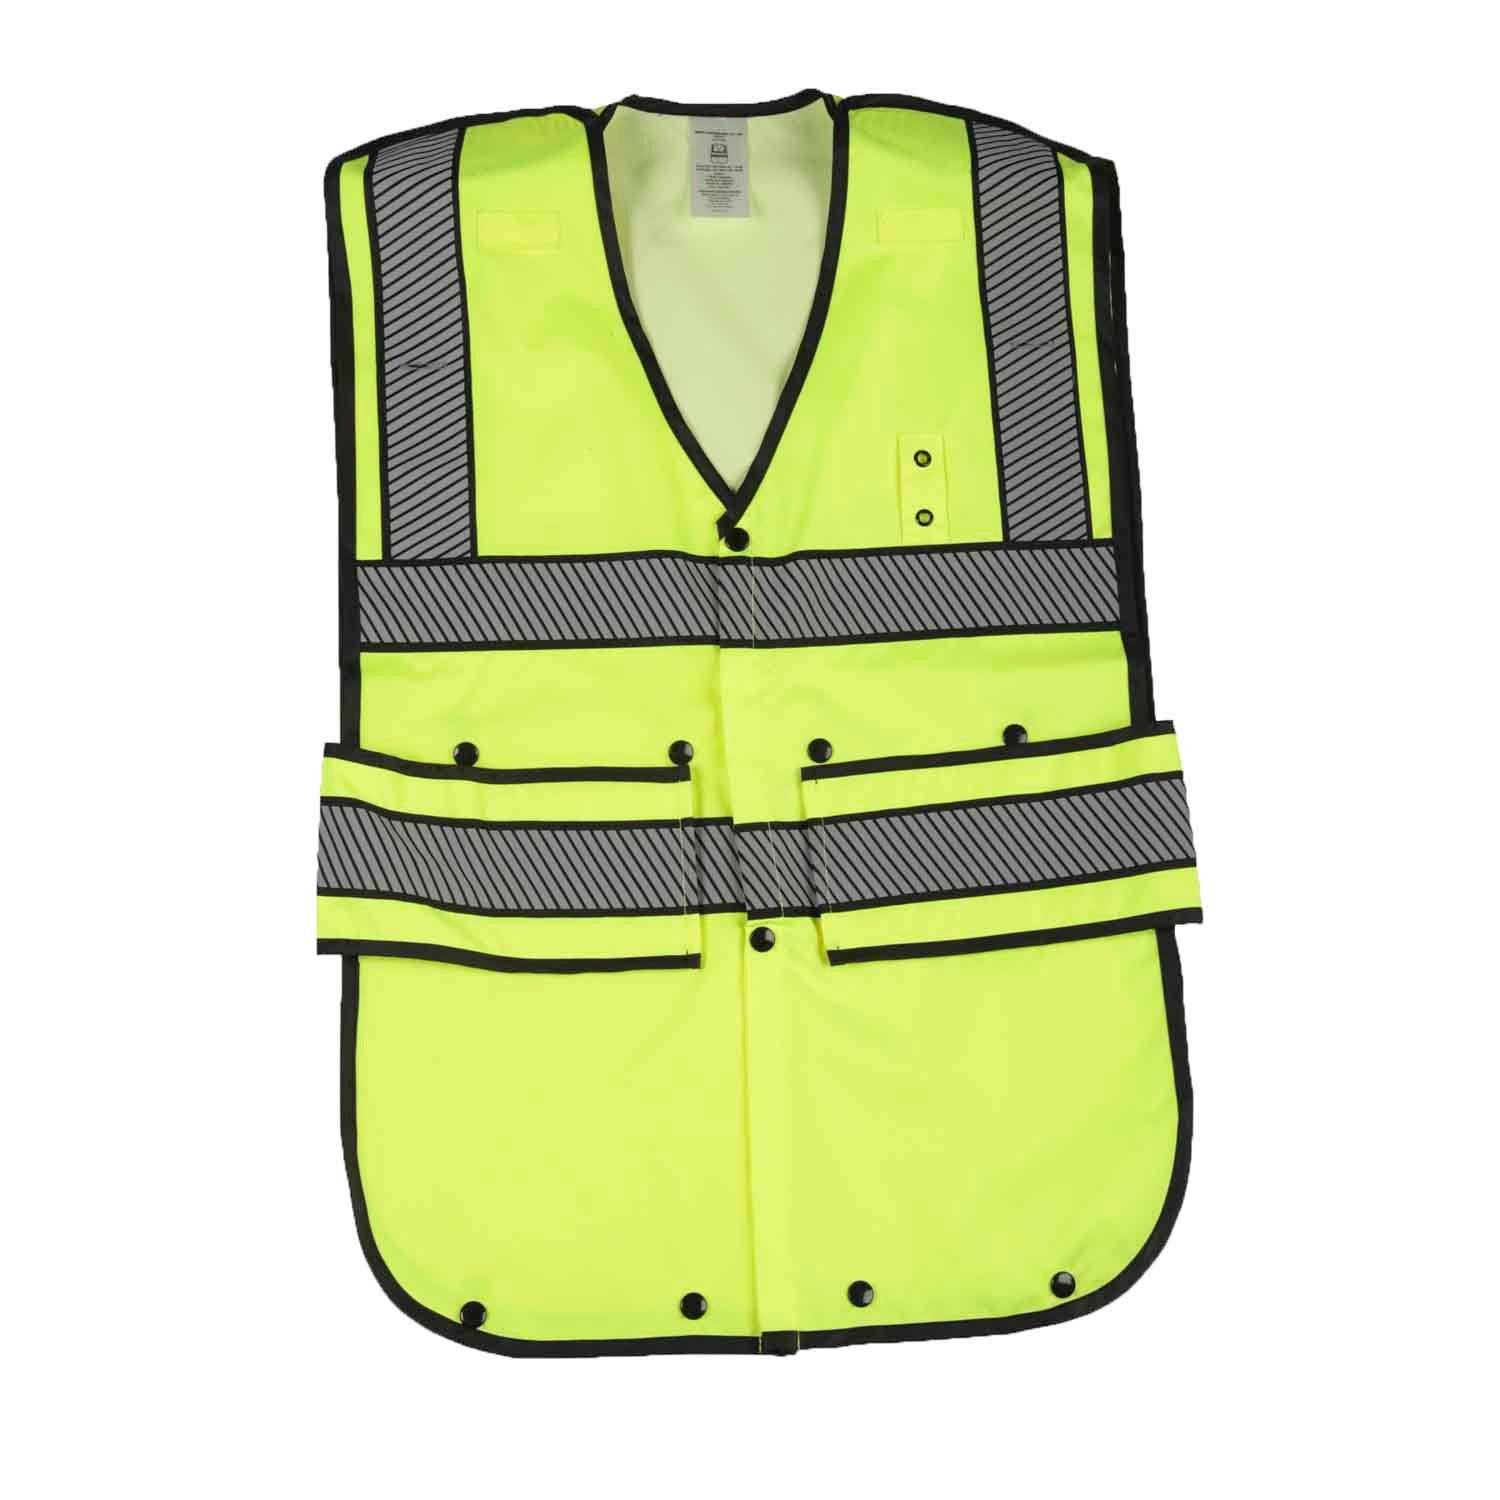 Liberty Uniform ANSI 2 Reflective Safety Vest